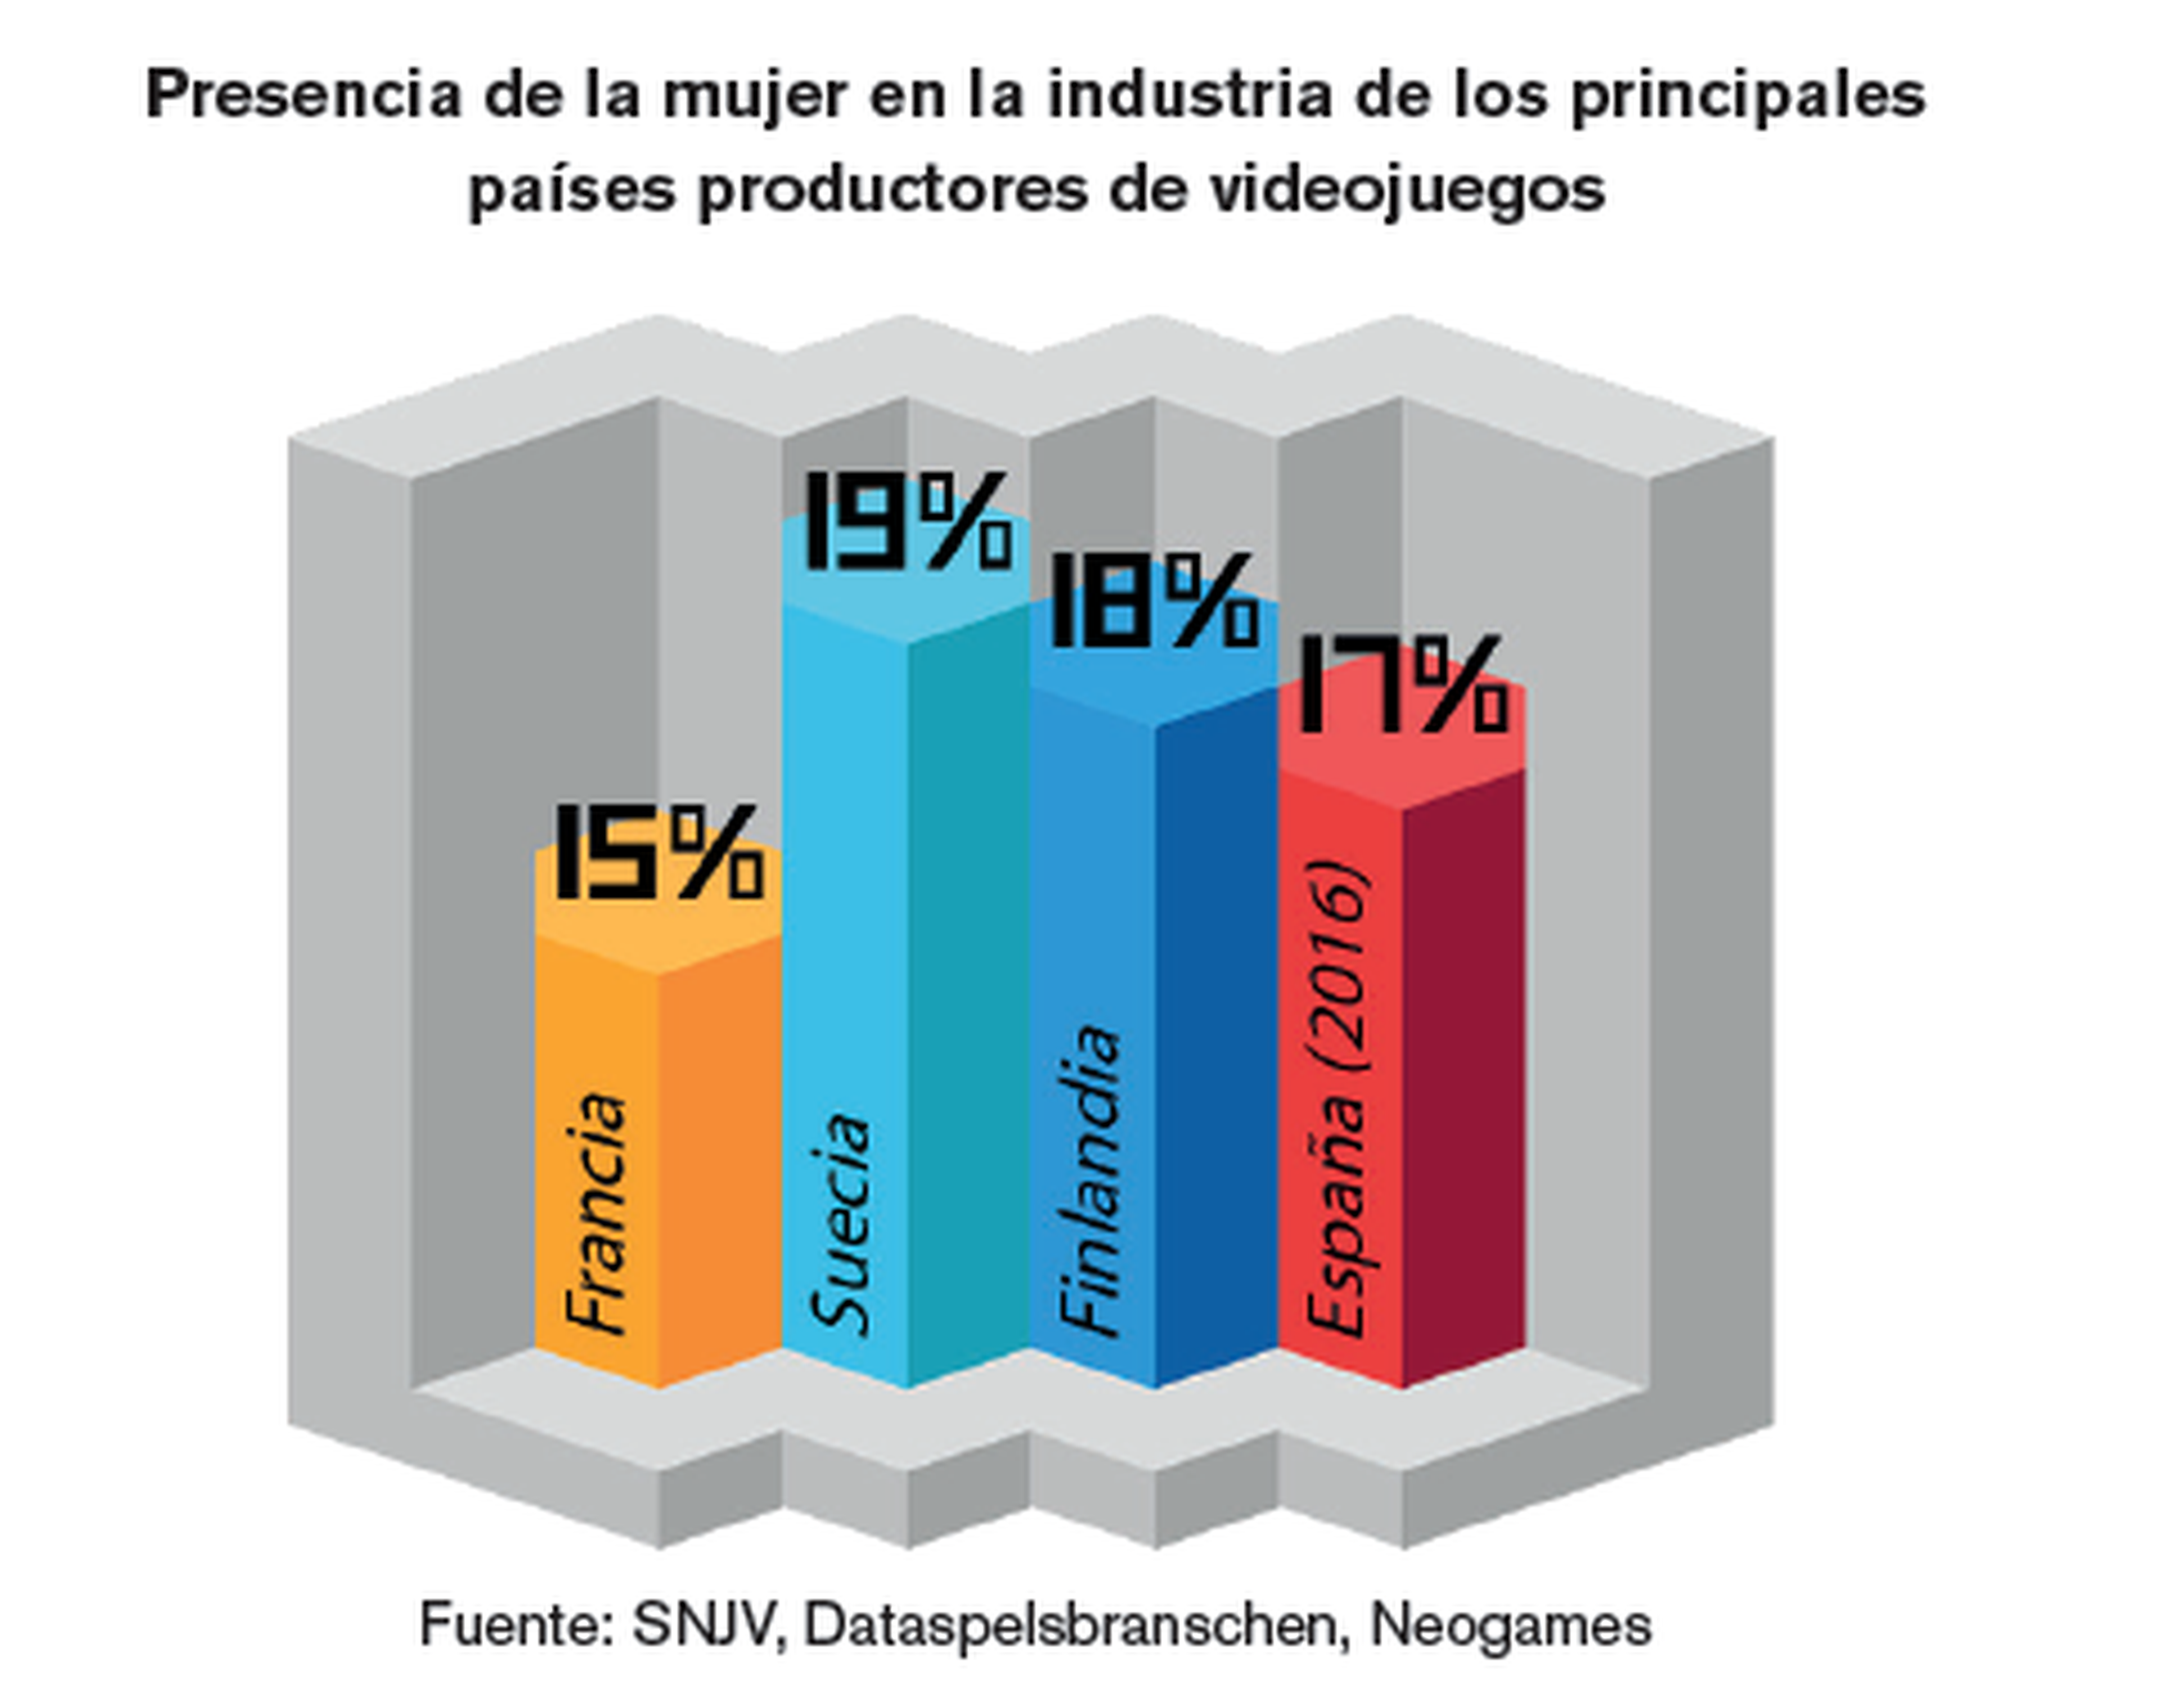 Presencia de mujeres en la industria en otros países. Fuente: SNJV, Dataspelsbranschen, Neogames